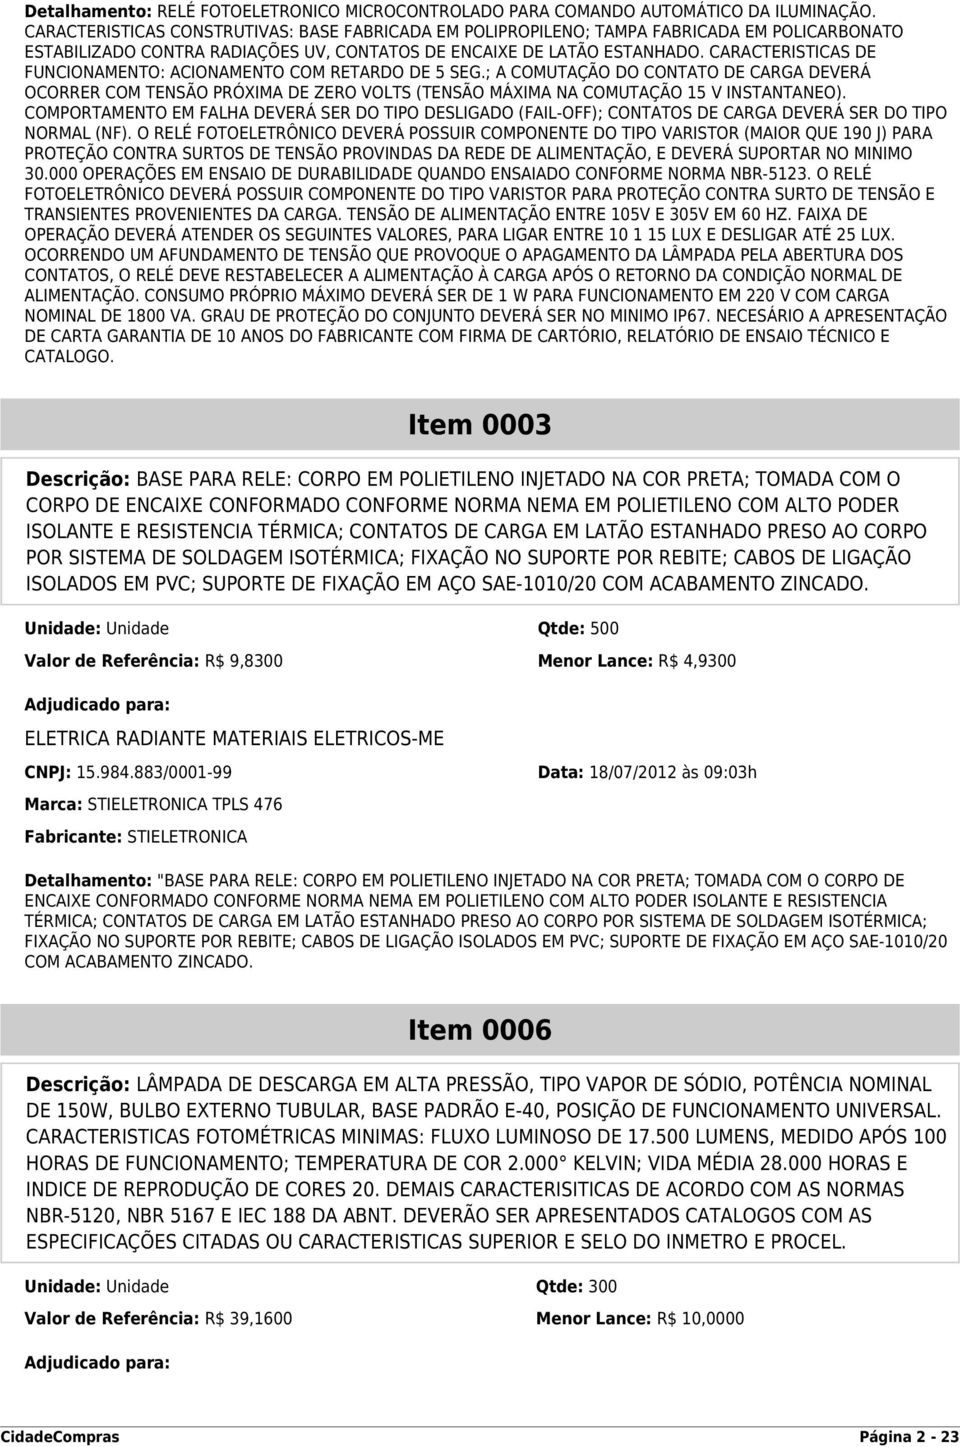 CARACTERISTICAS DE FUNCIONAMENTO: ACIONAMENTO COM RETARDO DE 5 SEG.; A COMUTAÇÃO DO CONTATO DE CARGA DEVERÁ OCORRER COM TENSÃO PRÓXIMA DE ZERO VOLTS (TENSÃO MÁXIMA NA COMUTAÇÃO 15 V INSTANTANEO).